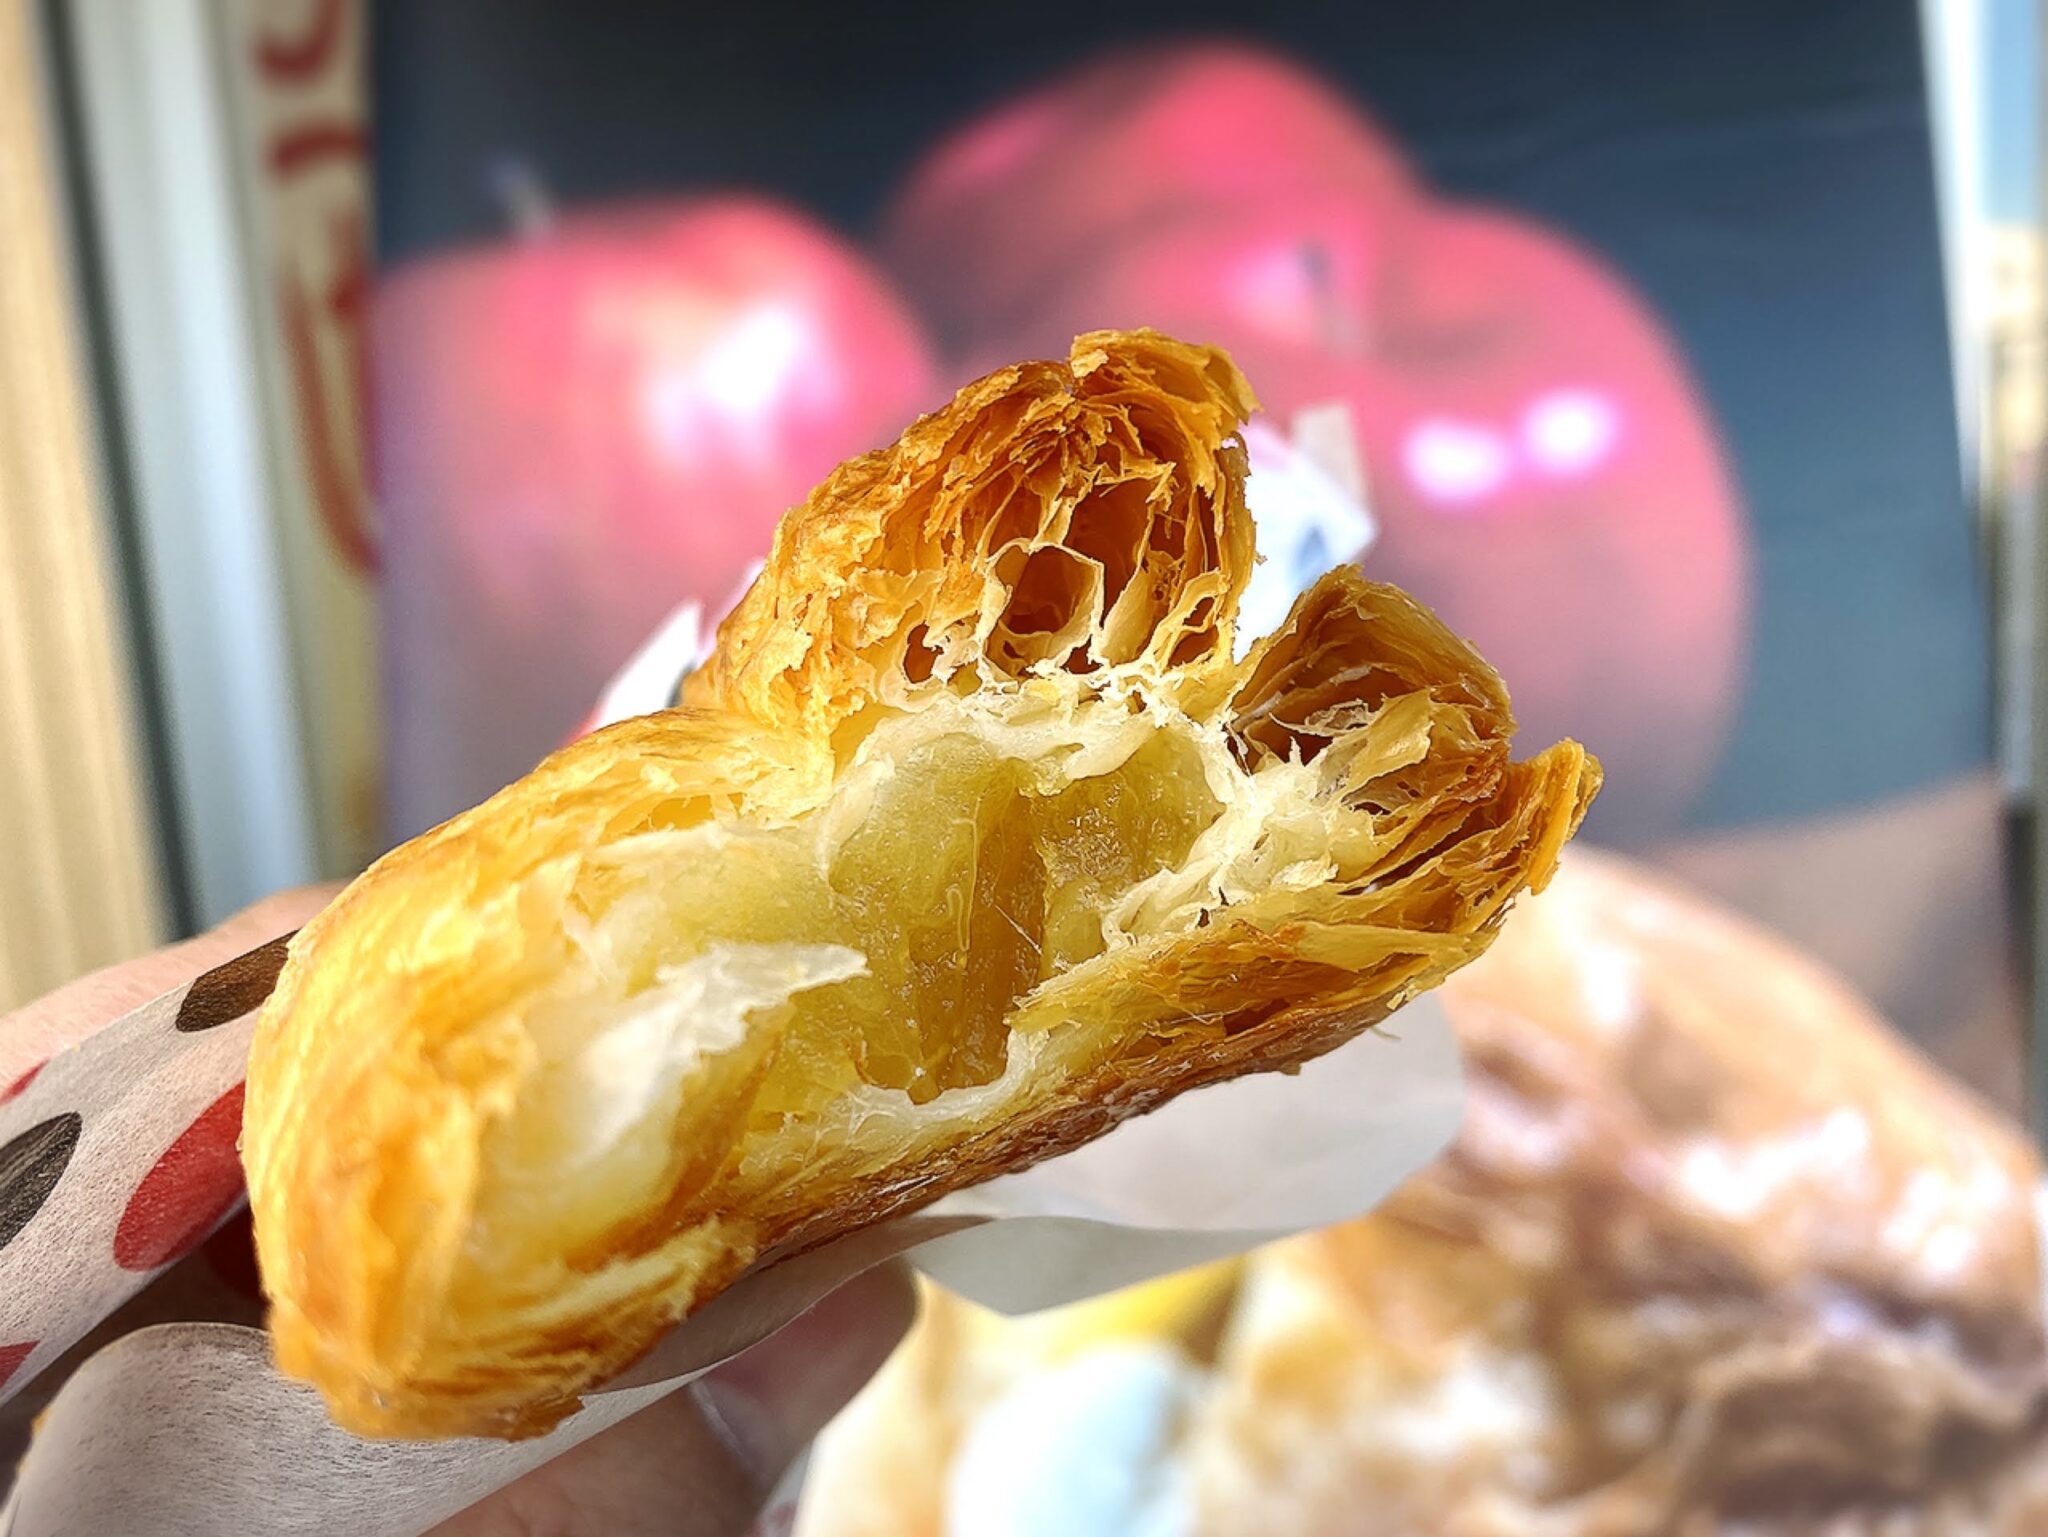 ドルチェ&マルコ 新所沢 世界一のアップルパイで買って食べてみた | 食べて埼玉